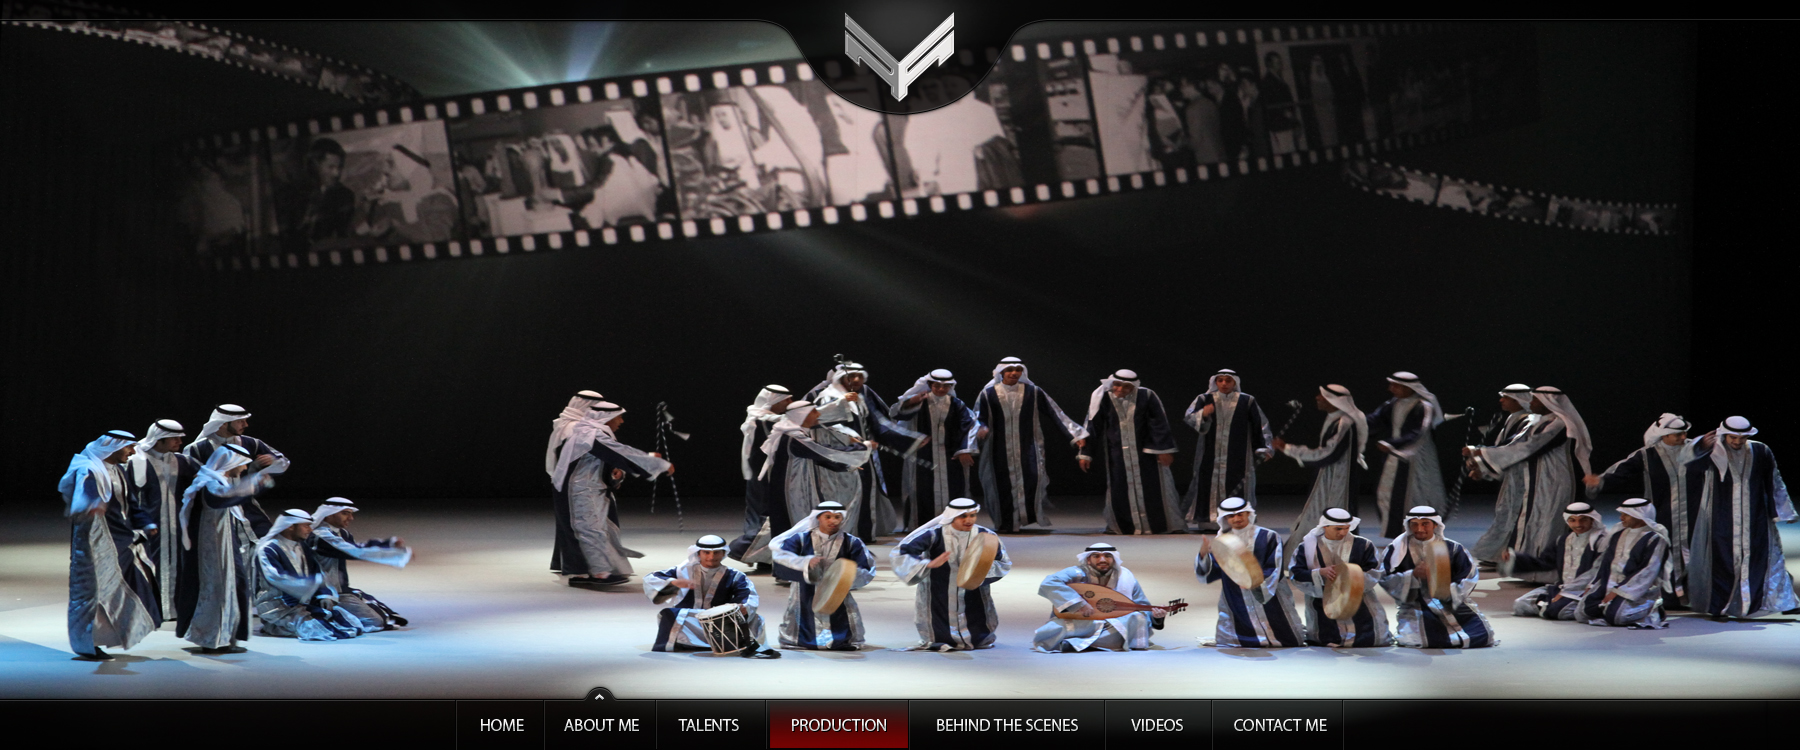 Kuwait National Day 50/20 - Emirs Operetta 2011, Kuwait